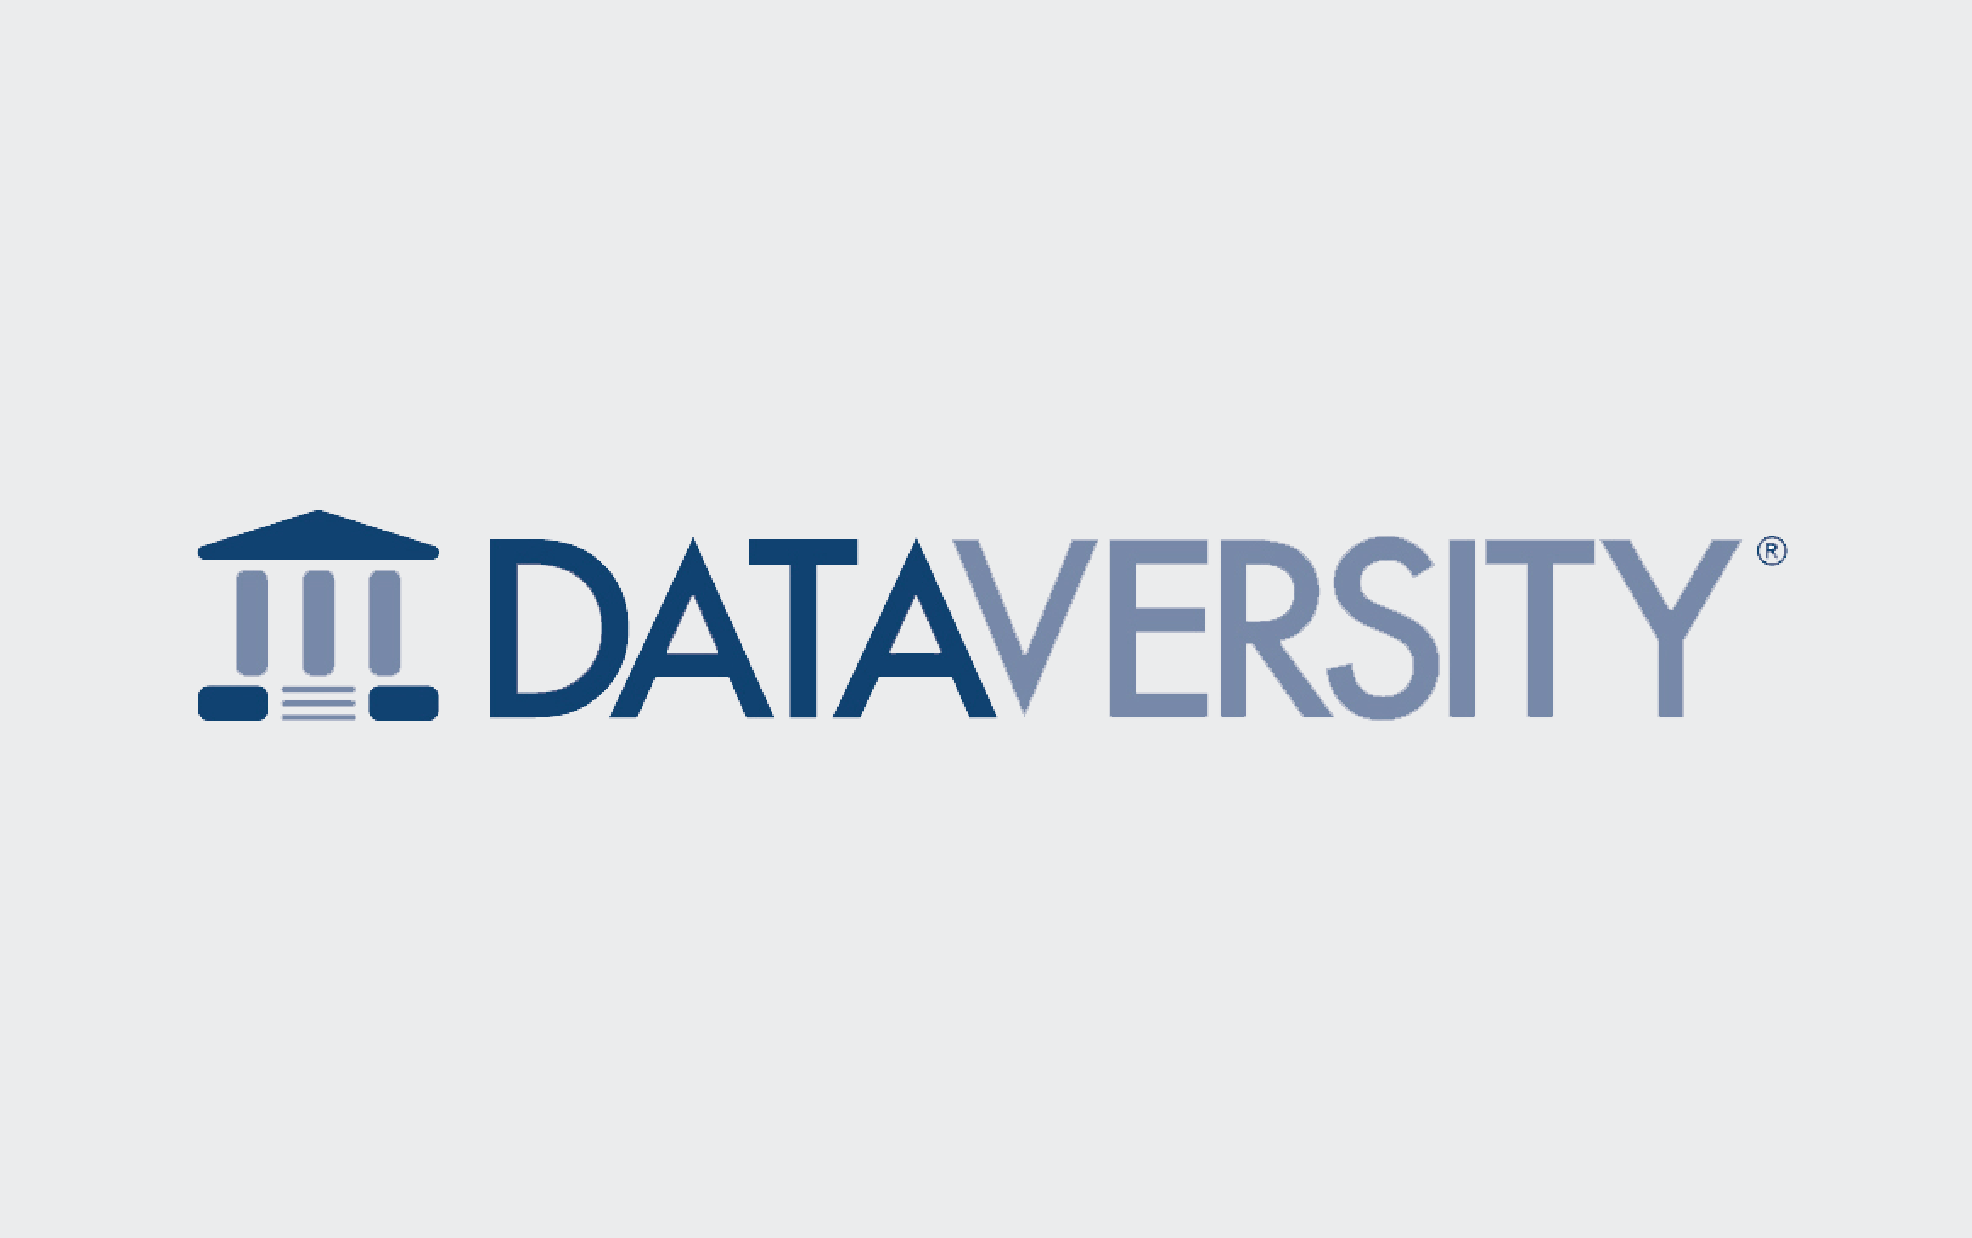 Dataversity logo with background and padding